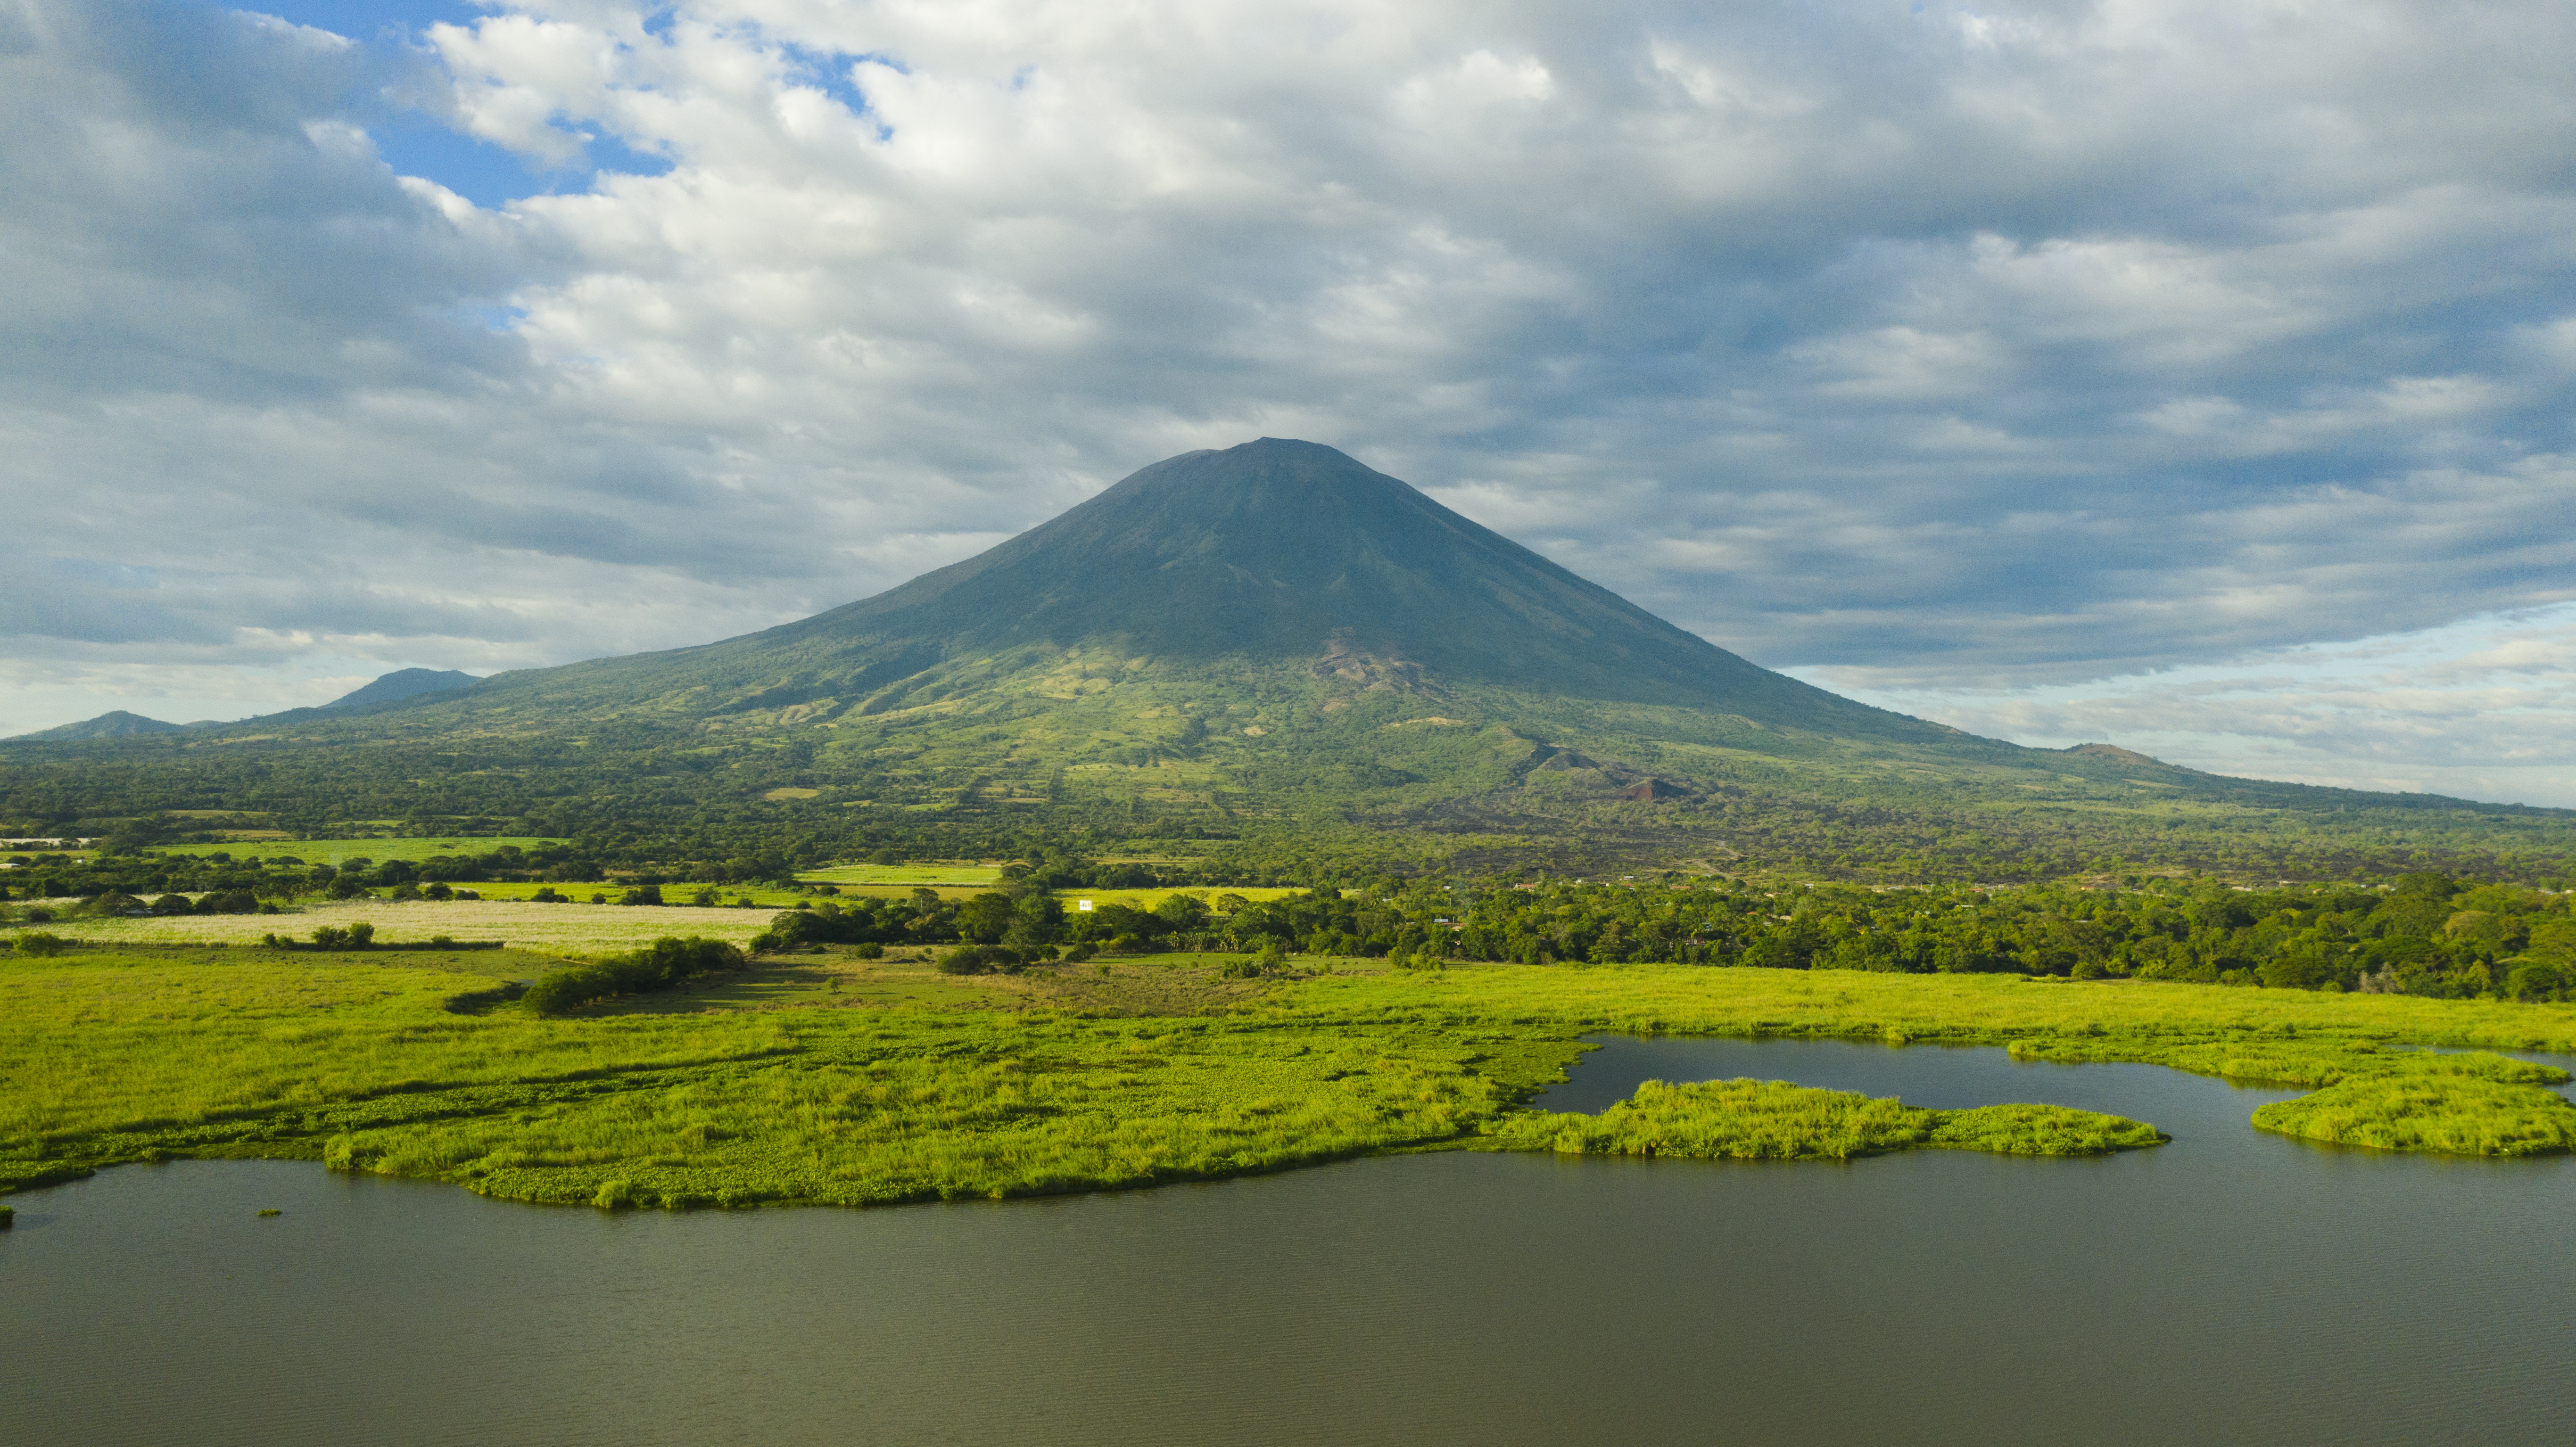 Volcán Chaparrastique, San Miguel, El Salvador